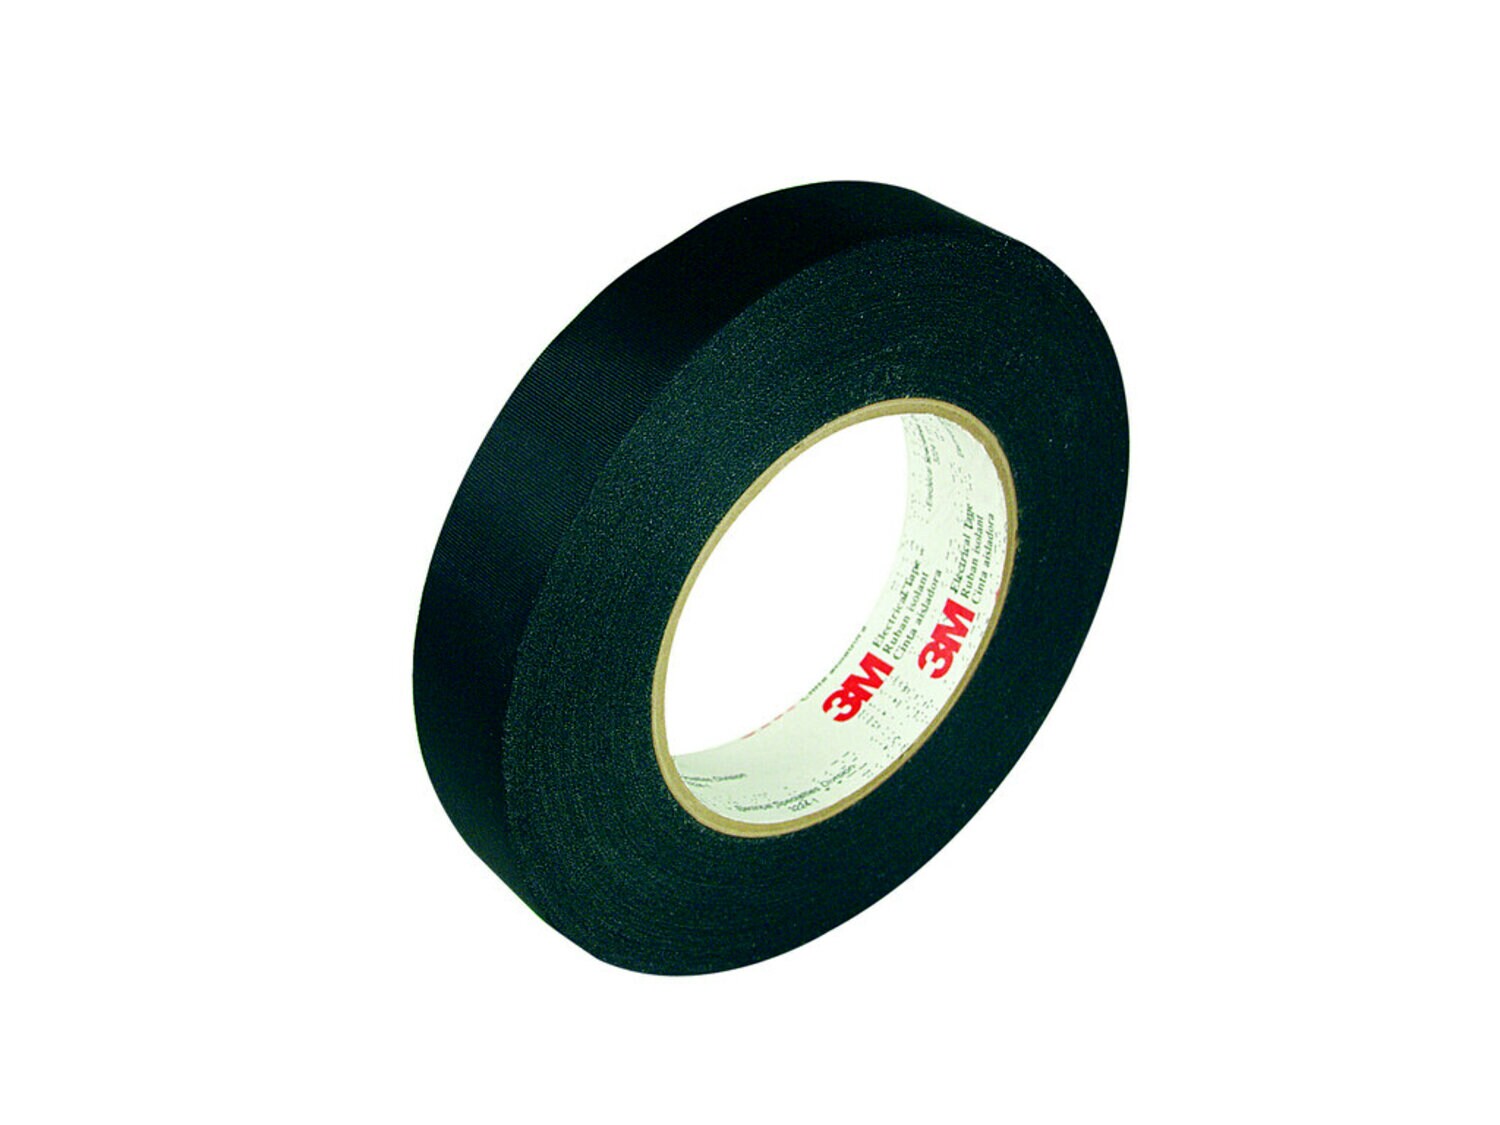 7010396986 - 3M Acetate Cloth Electrical Tape 11, 1/4 in x 72 yd, 3 in Paper Core,
Black, 144 Rolls/Case